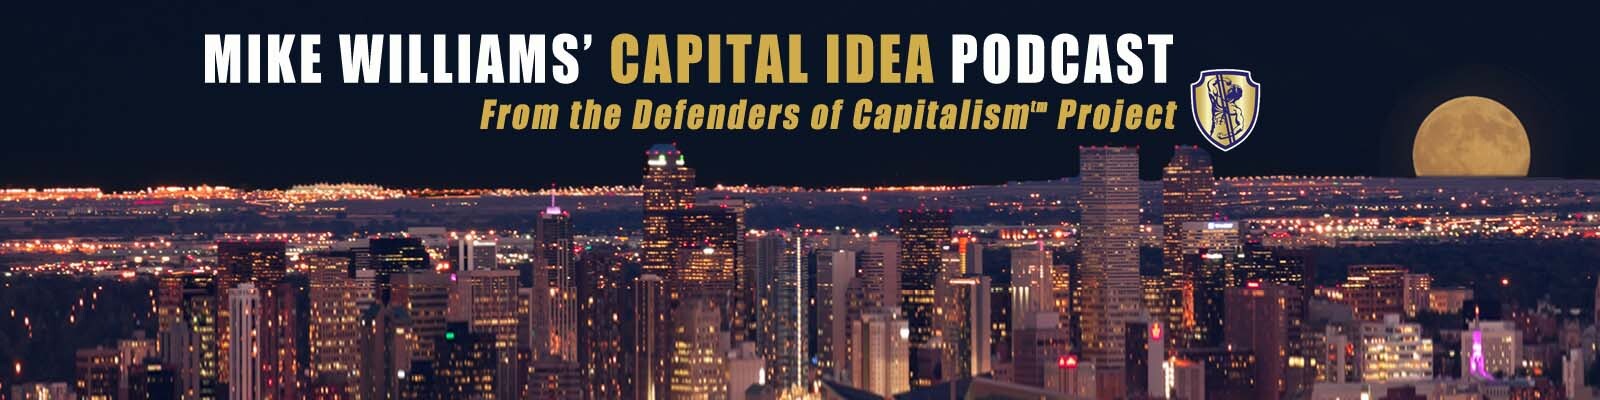 Mike Williams’ Capital Idea